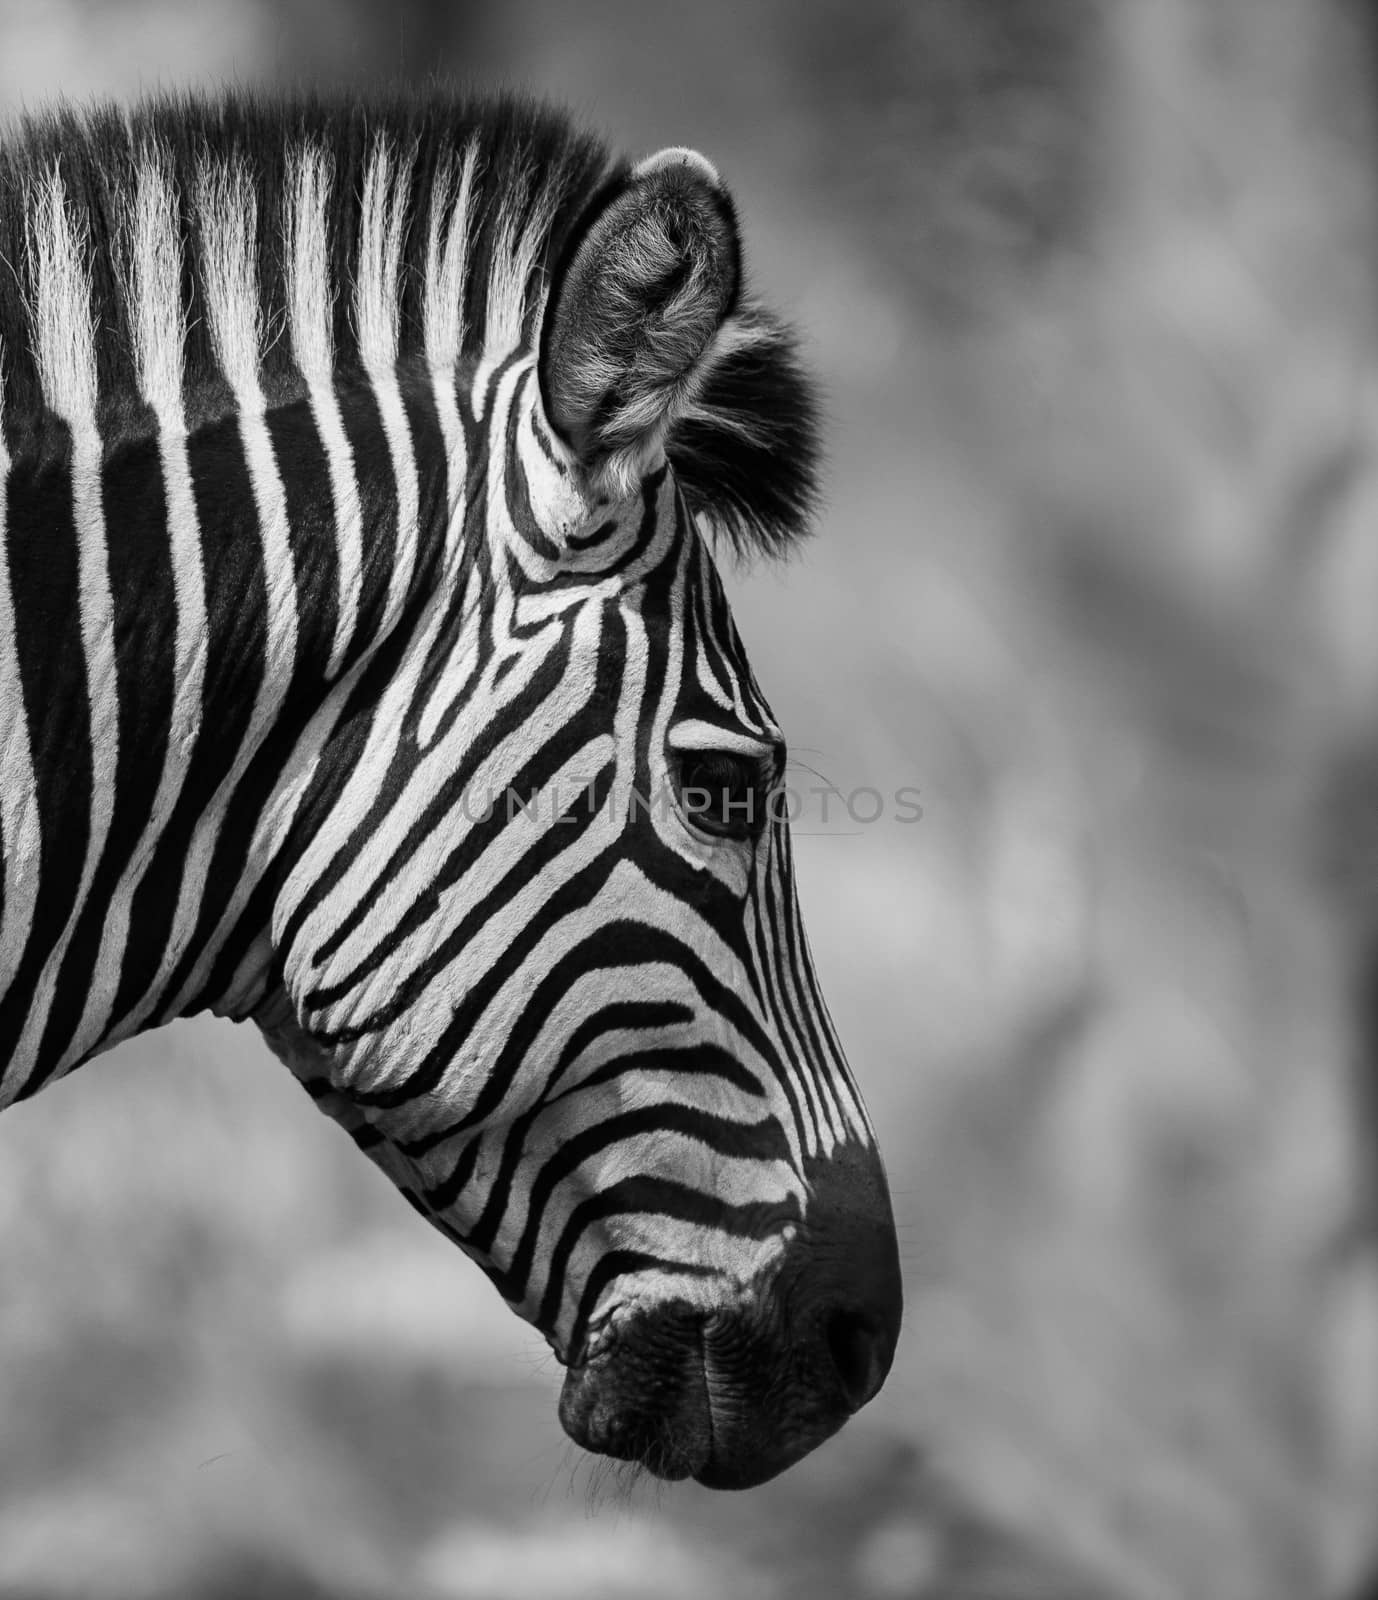 Zebra Head by donvanstaden